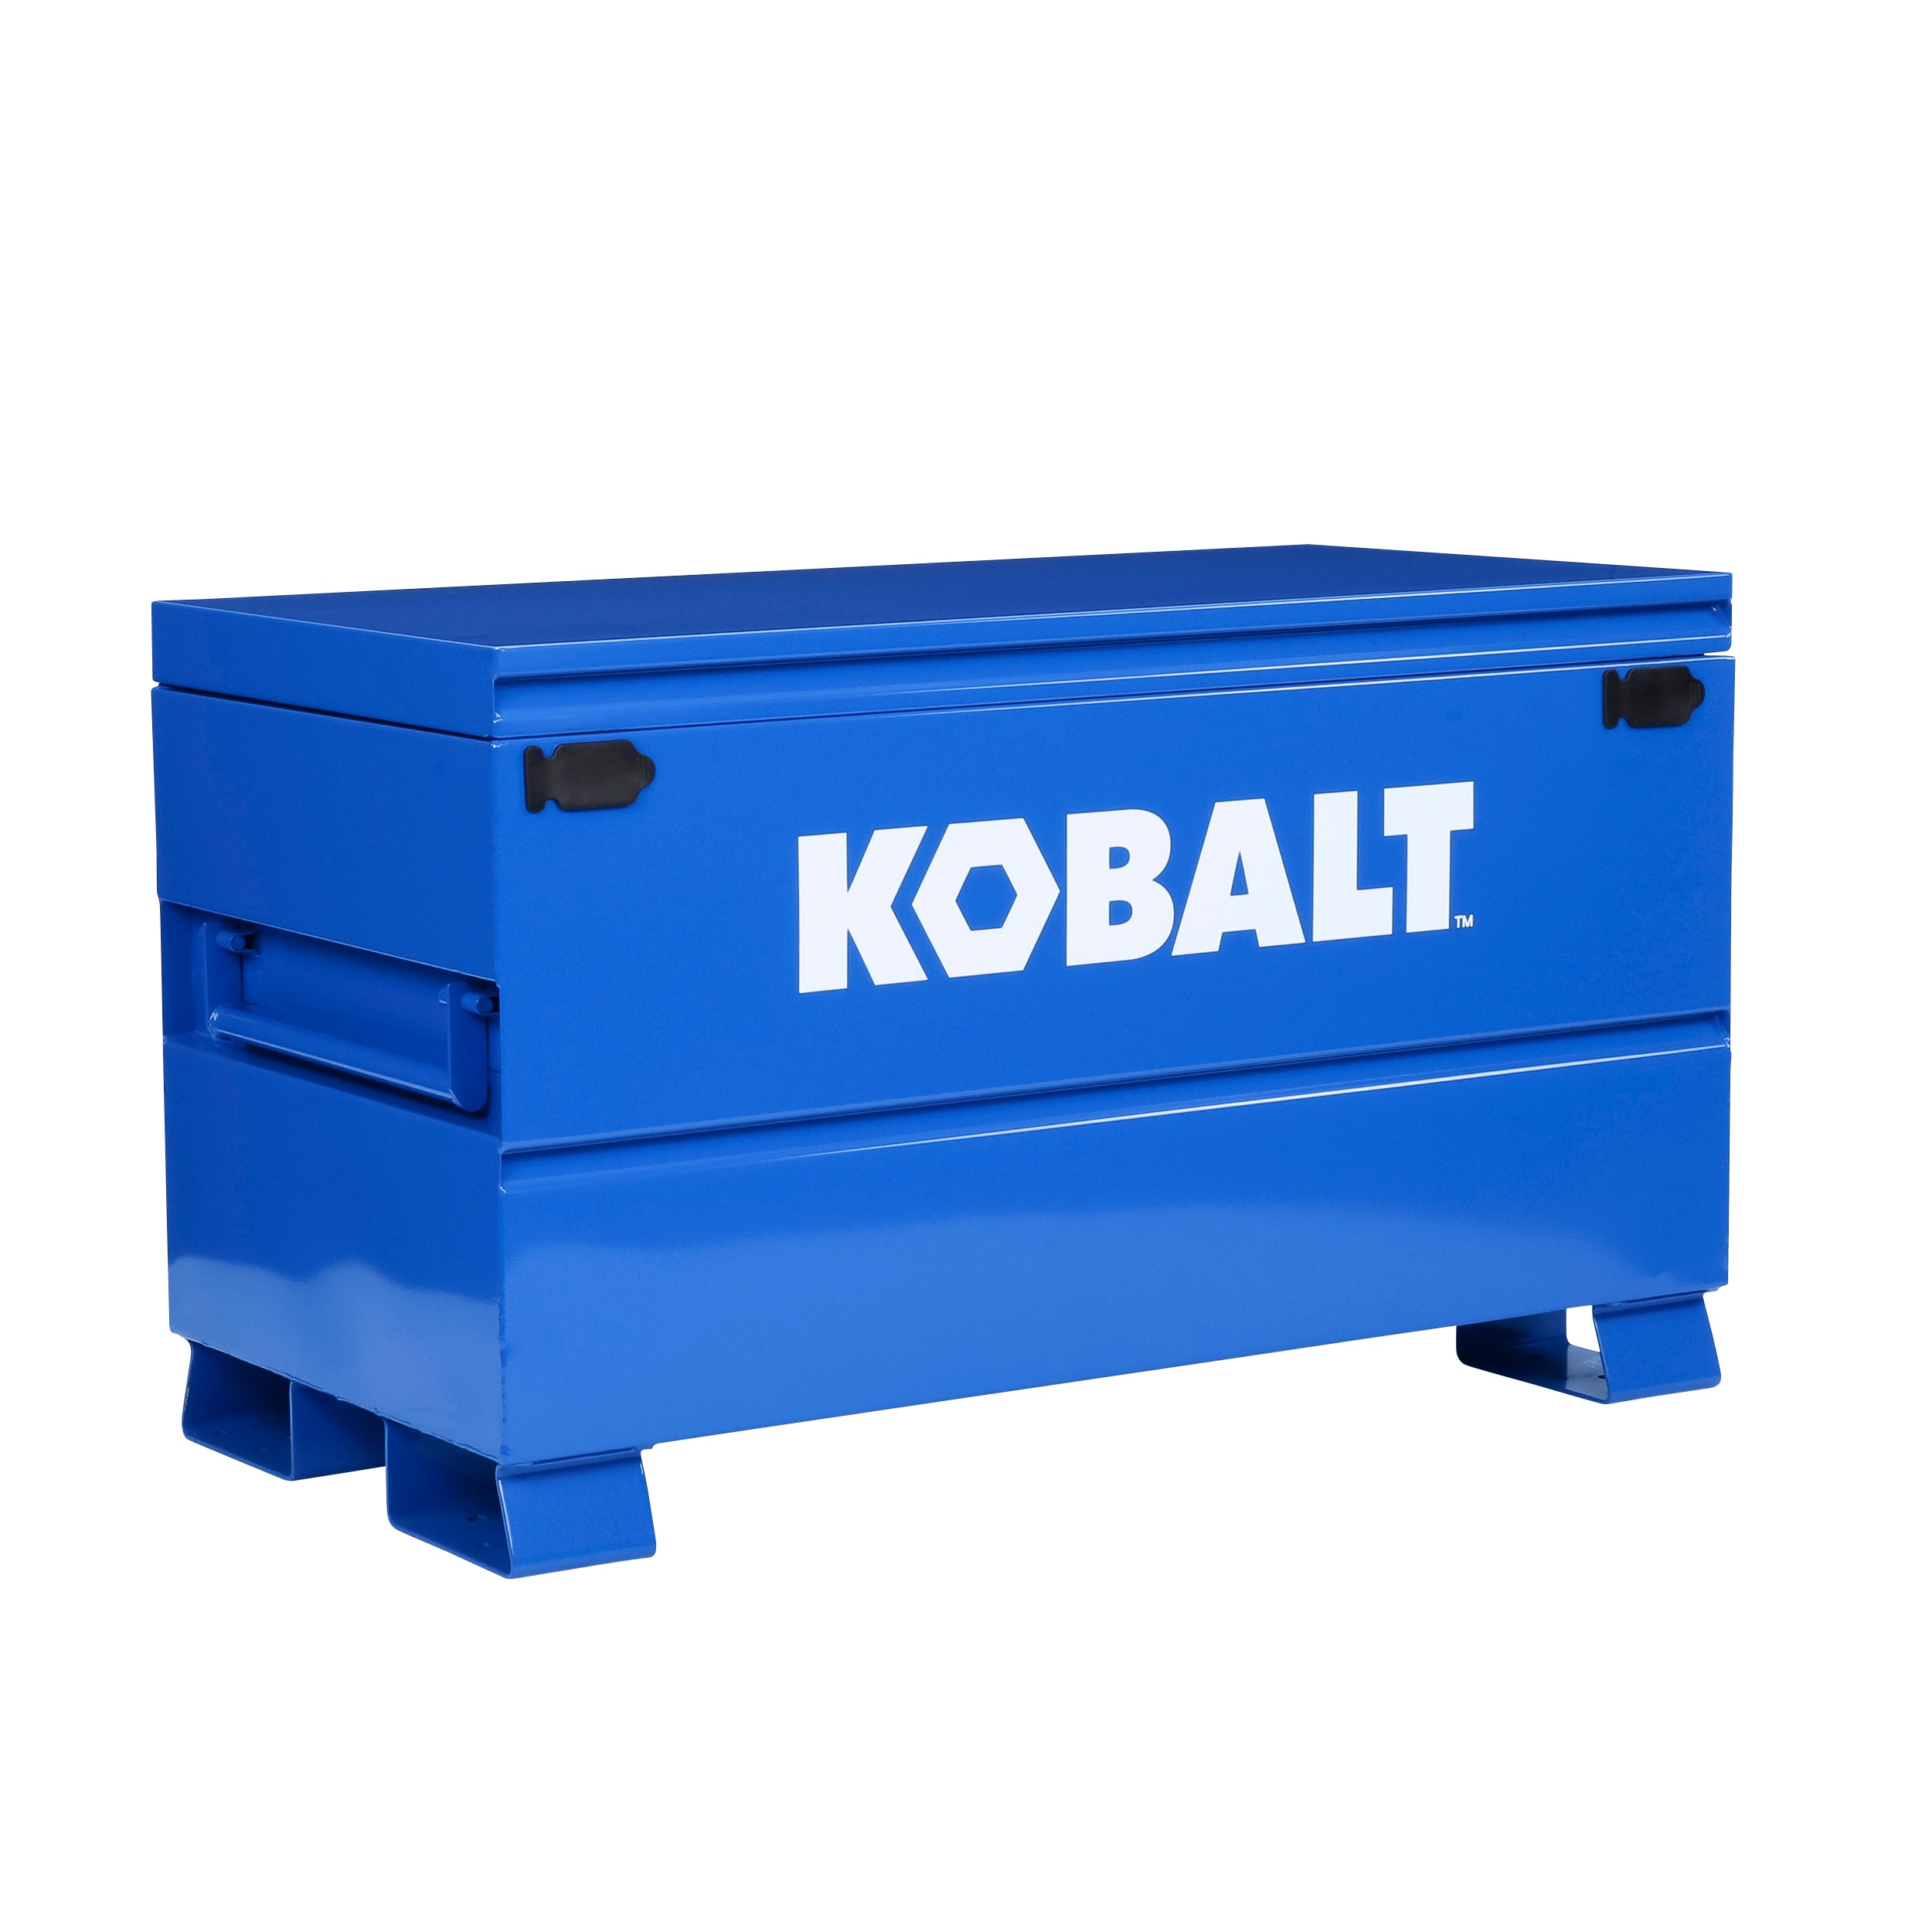 Kobalt KB48